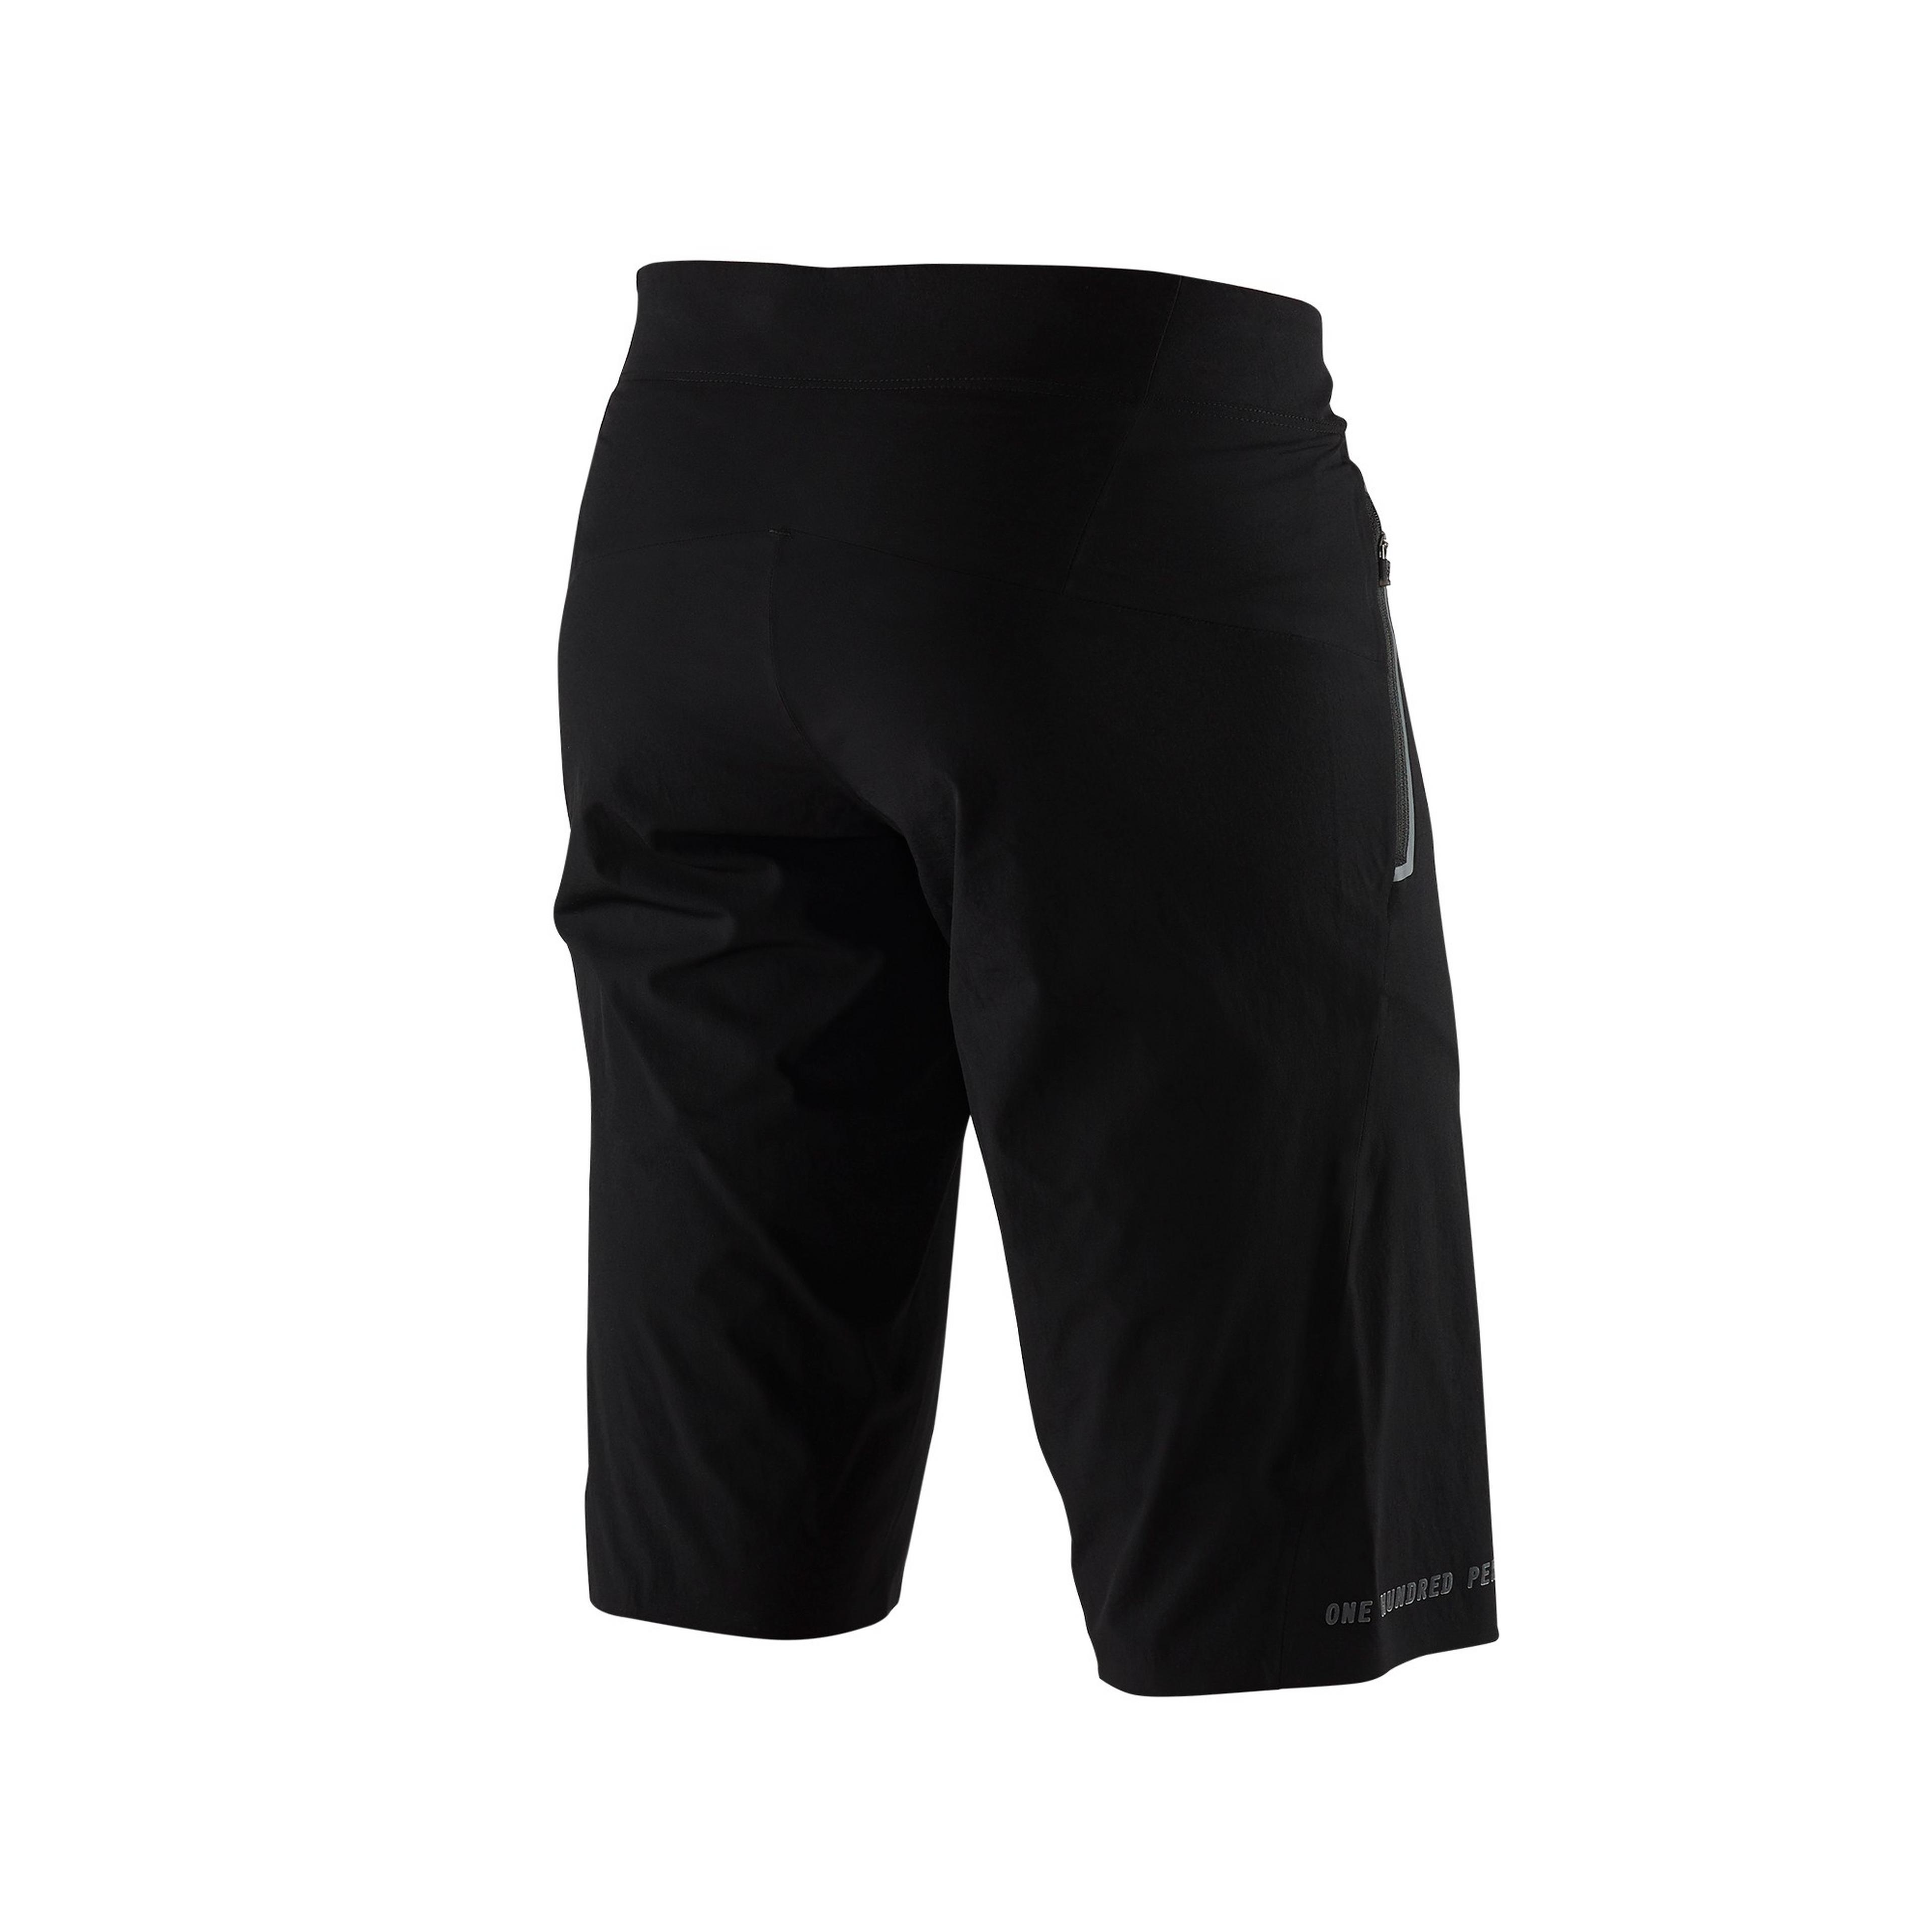 100% Celium Shorts | Wiggle